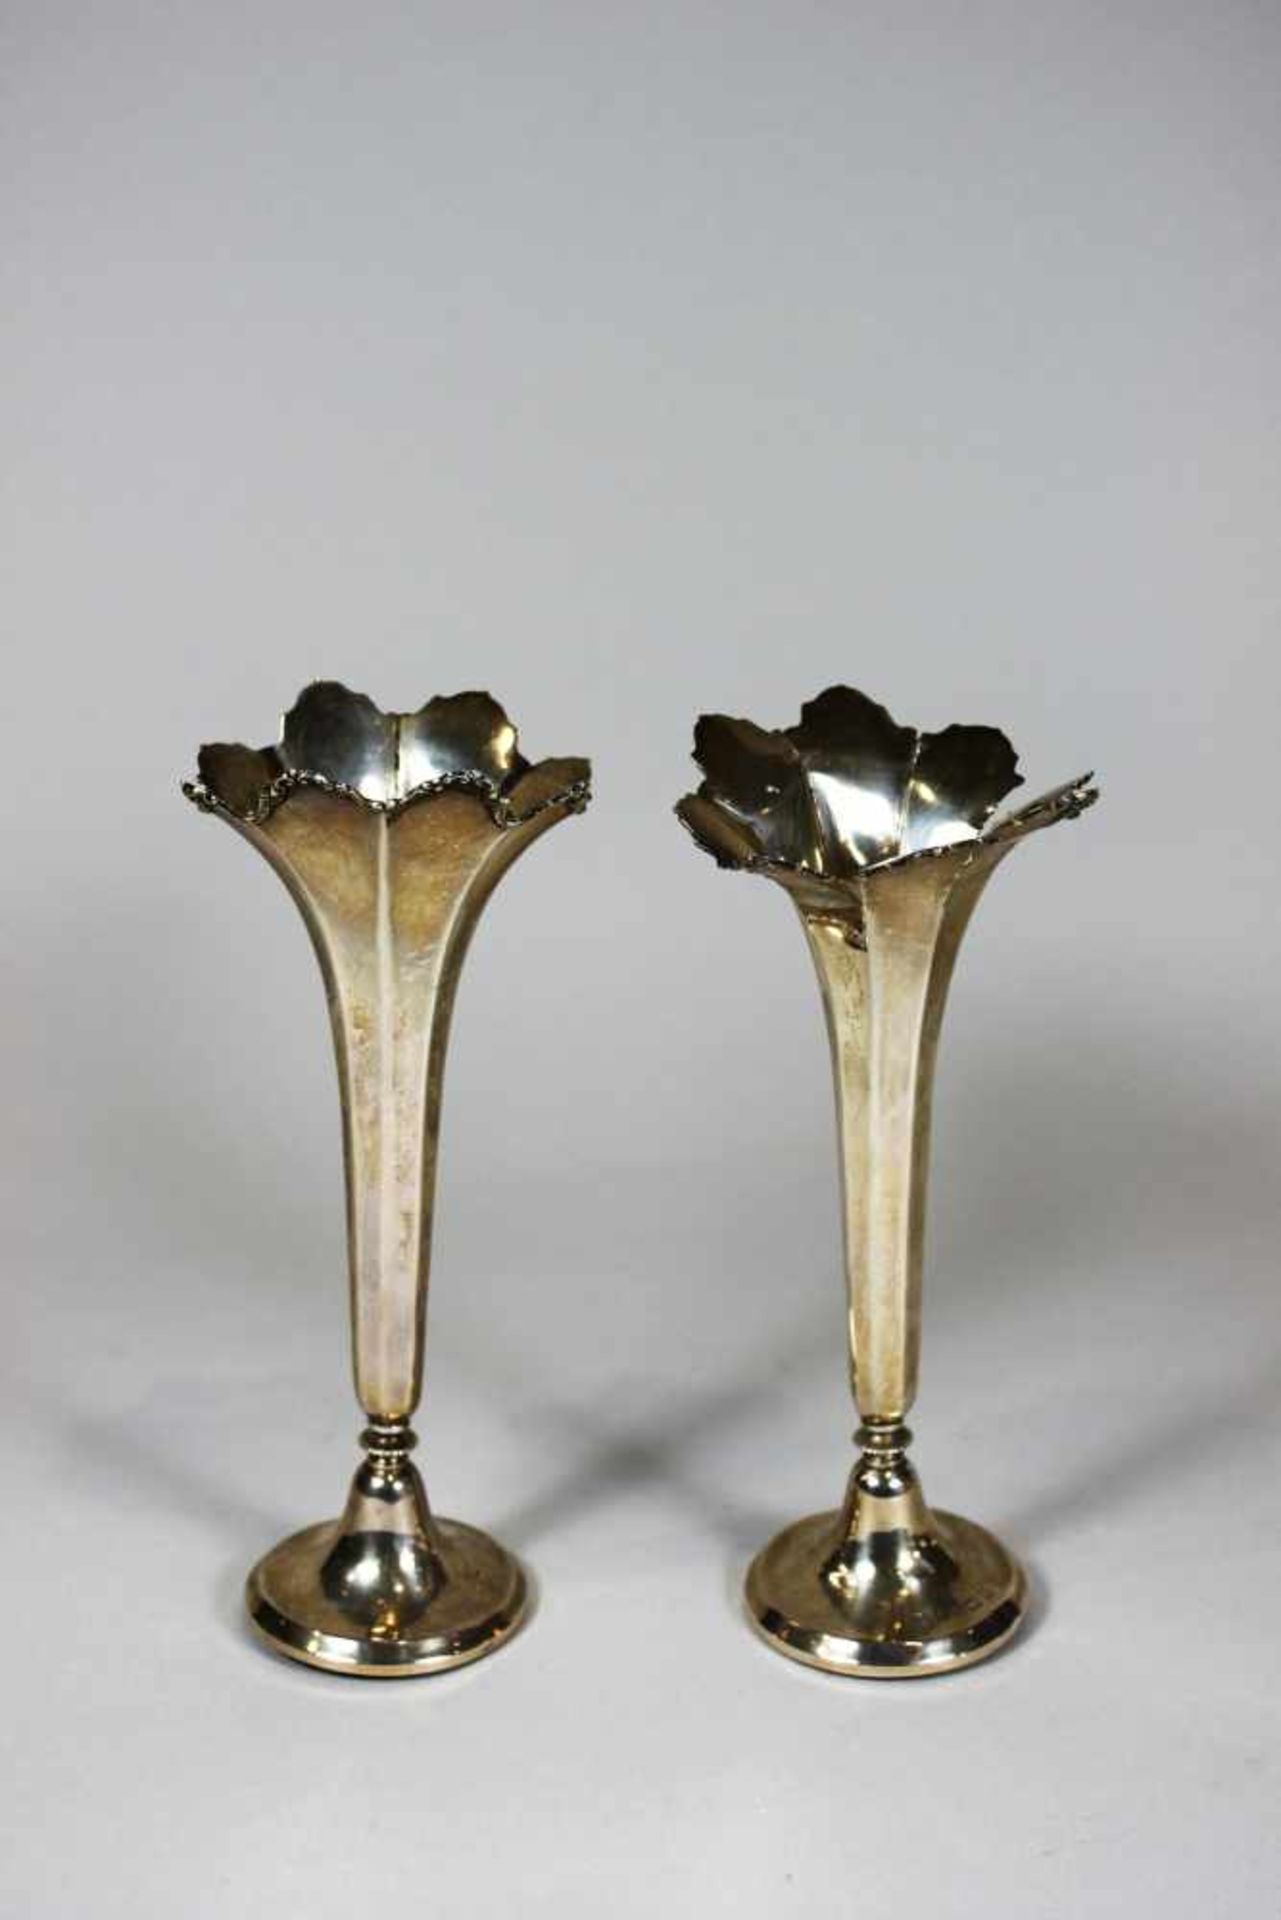 Paar kleine Vasen, Silber, gepunzt, Mappin and Webb, Birbingham, 1911, H.: 17 cm, eine Vase